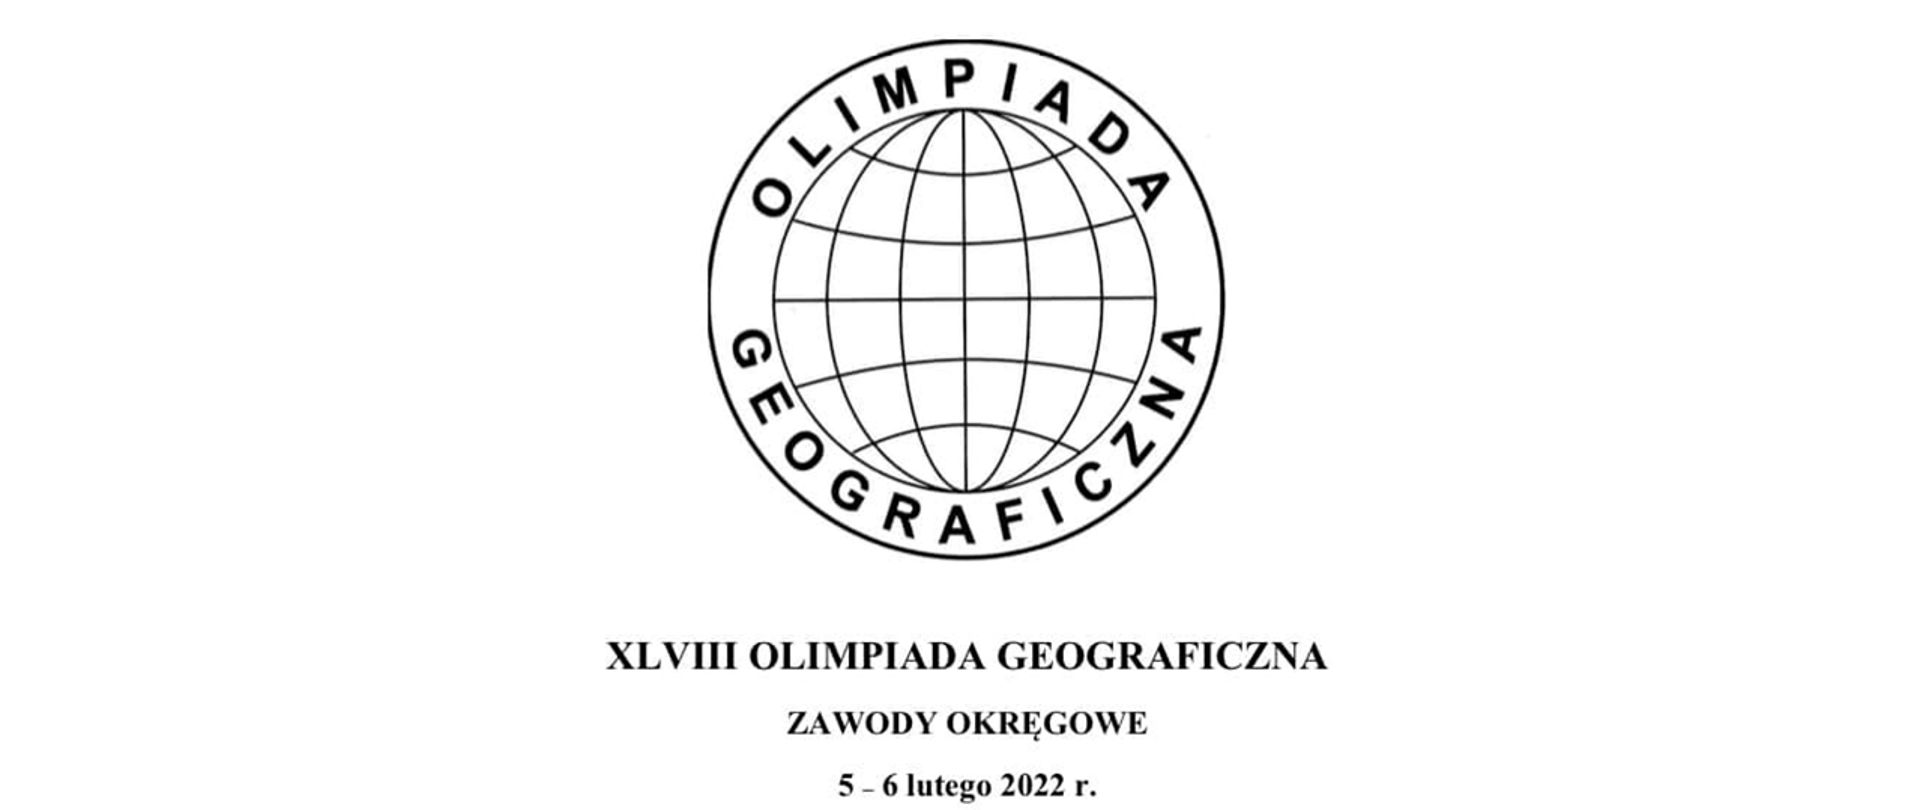 Honorowy patronat nad Olimpiadą Geograficzną objął Józef Kruczkowski- Regionalny Dyrektor Ochrony Środowiska w Gorzowie Wielkopolskim. 